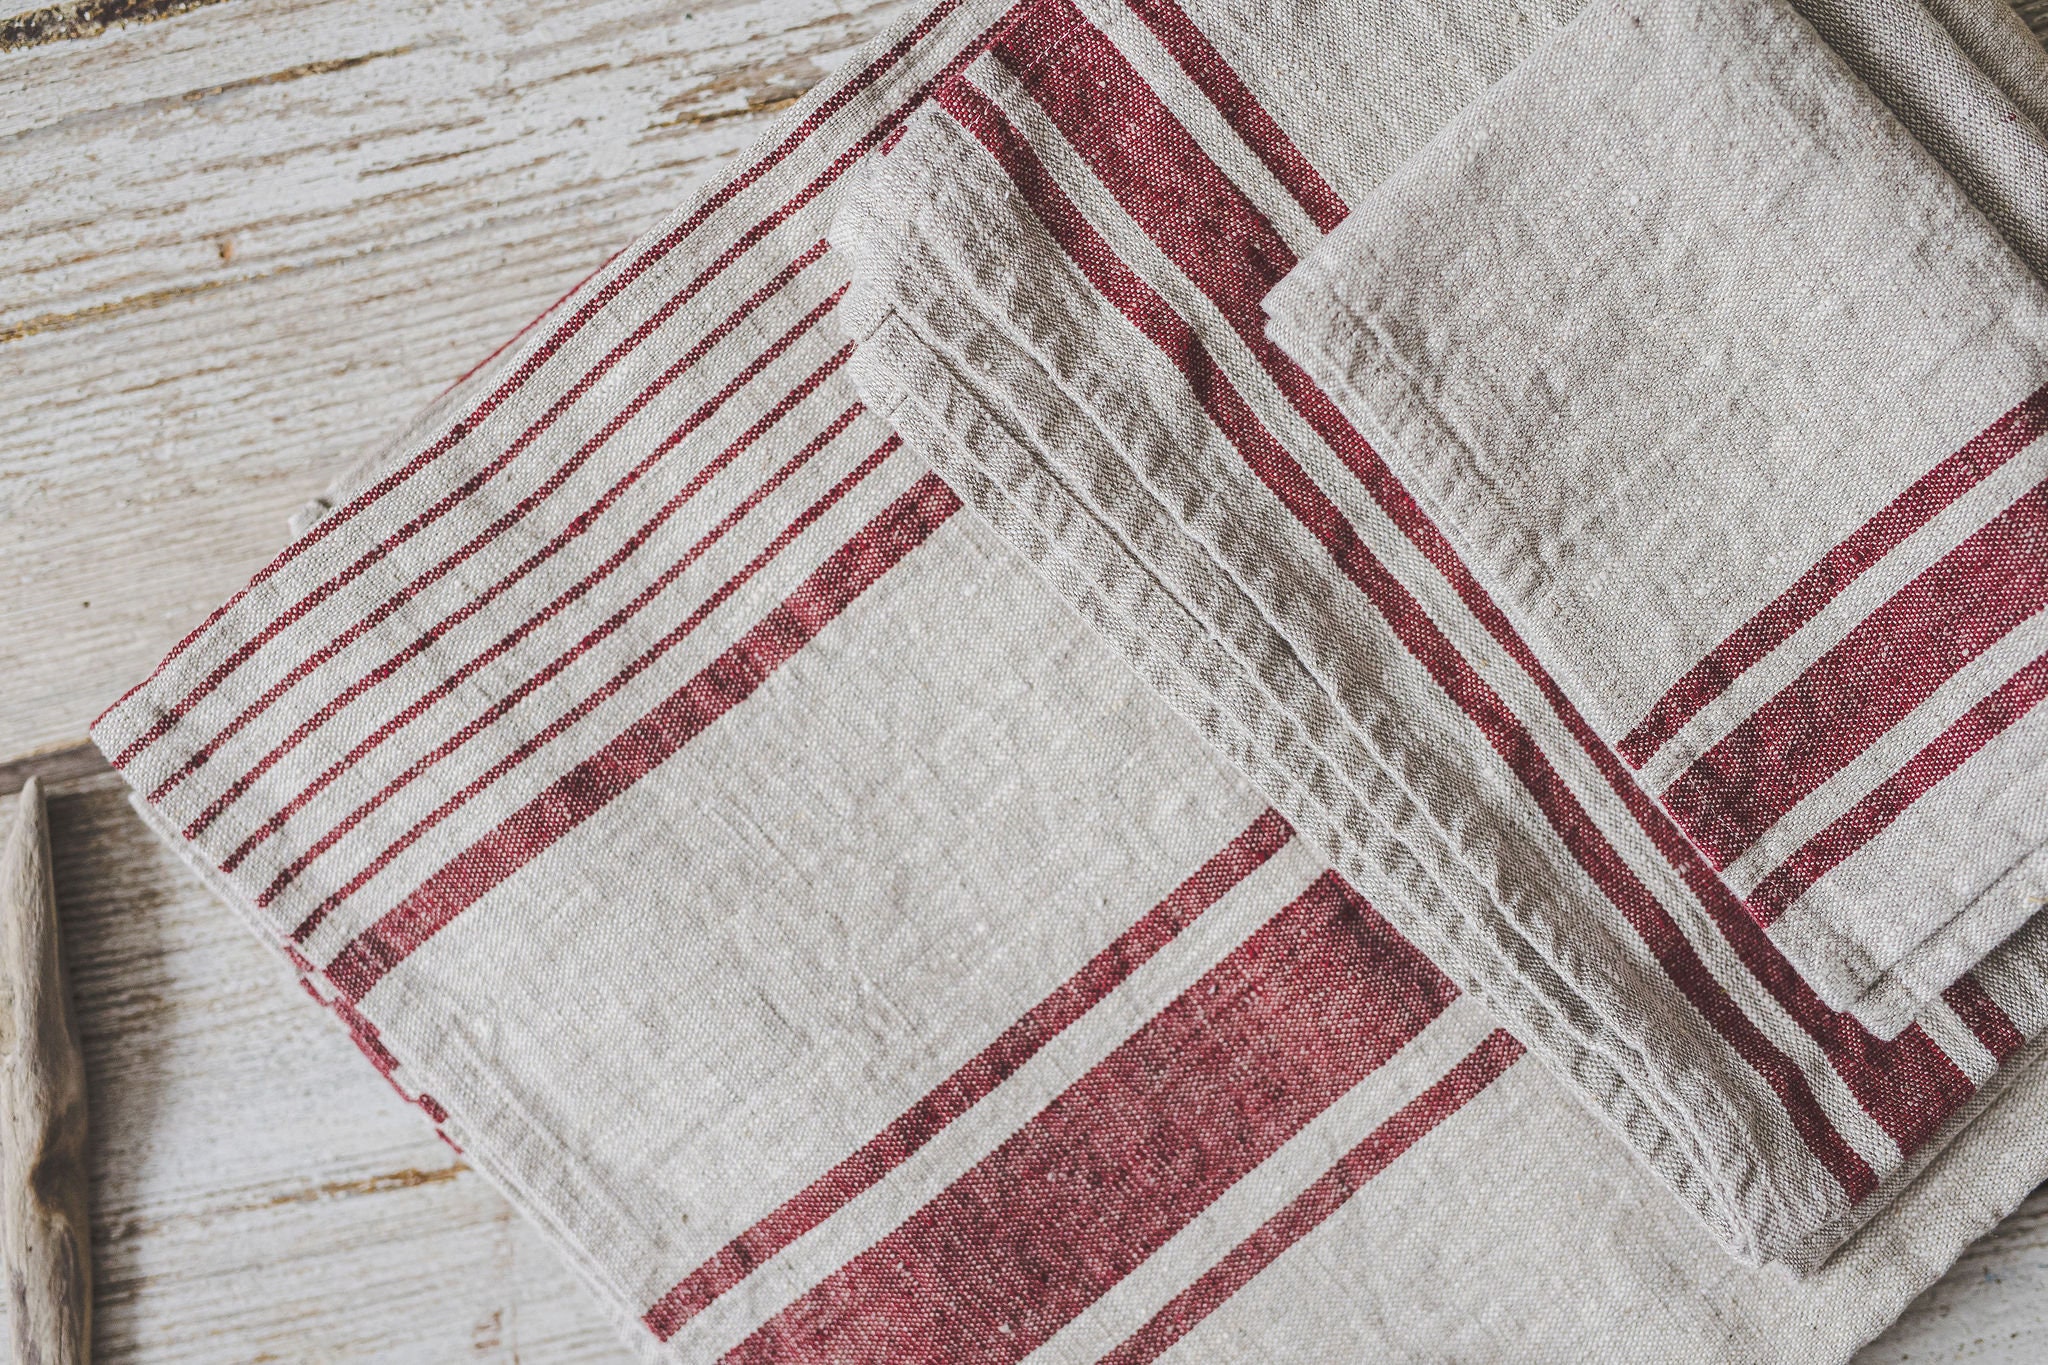 Handmade striped linen towel / Linen bath towel / Fringed linen hand towel  / Thick striped linen towels / Linen rustic towel / yoga towel